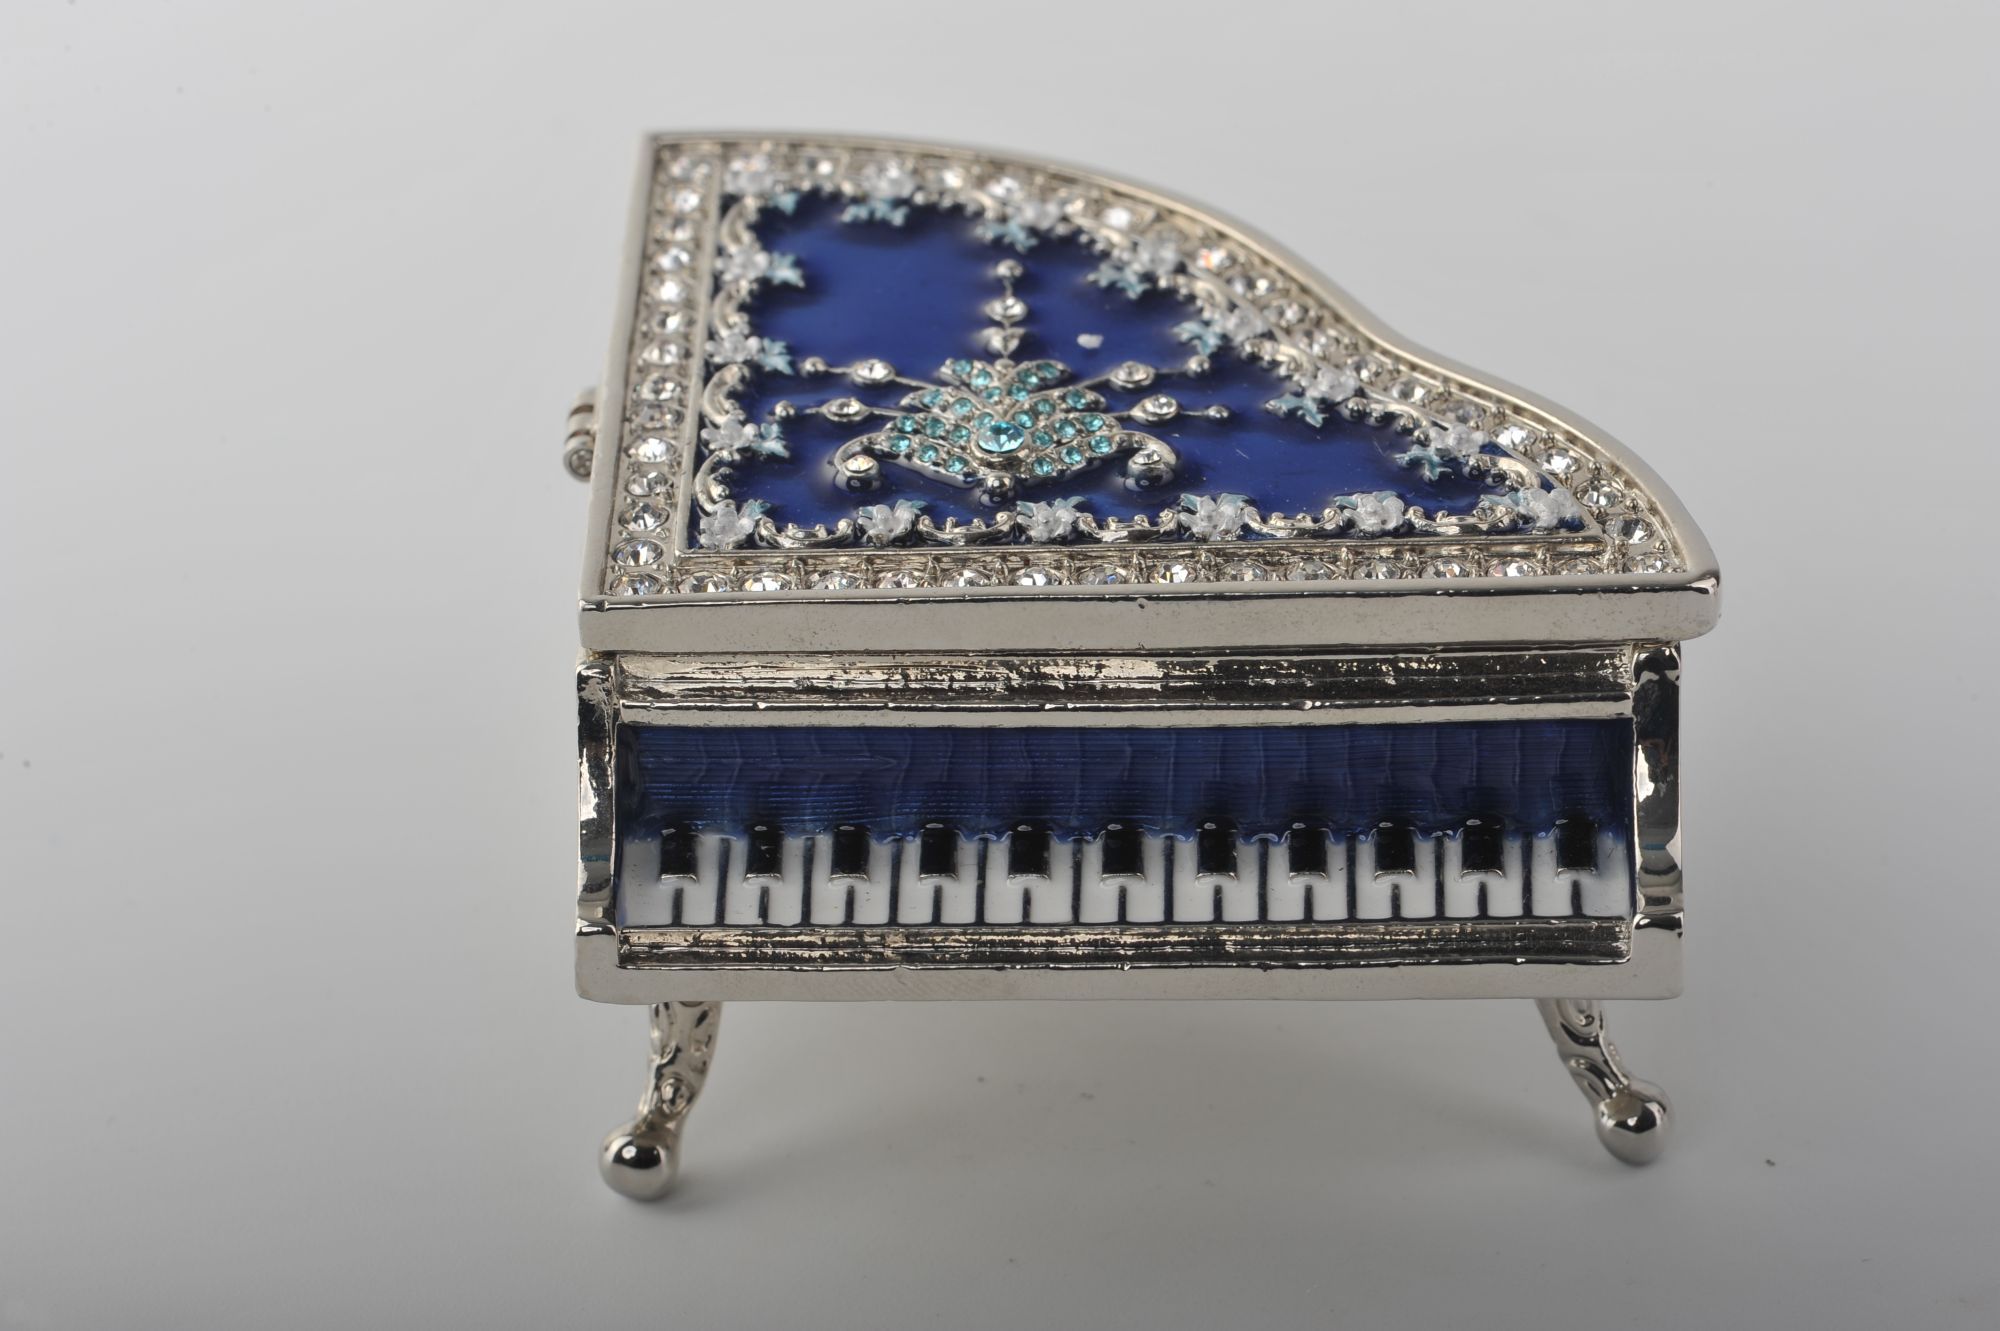 Vintage Blue Piano